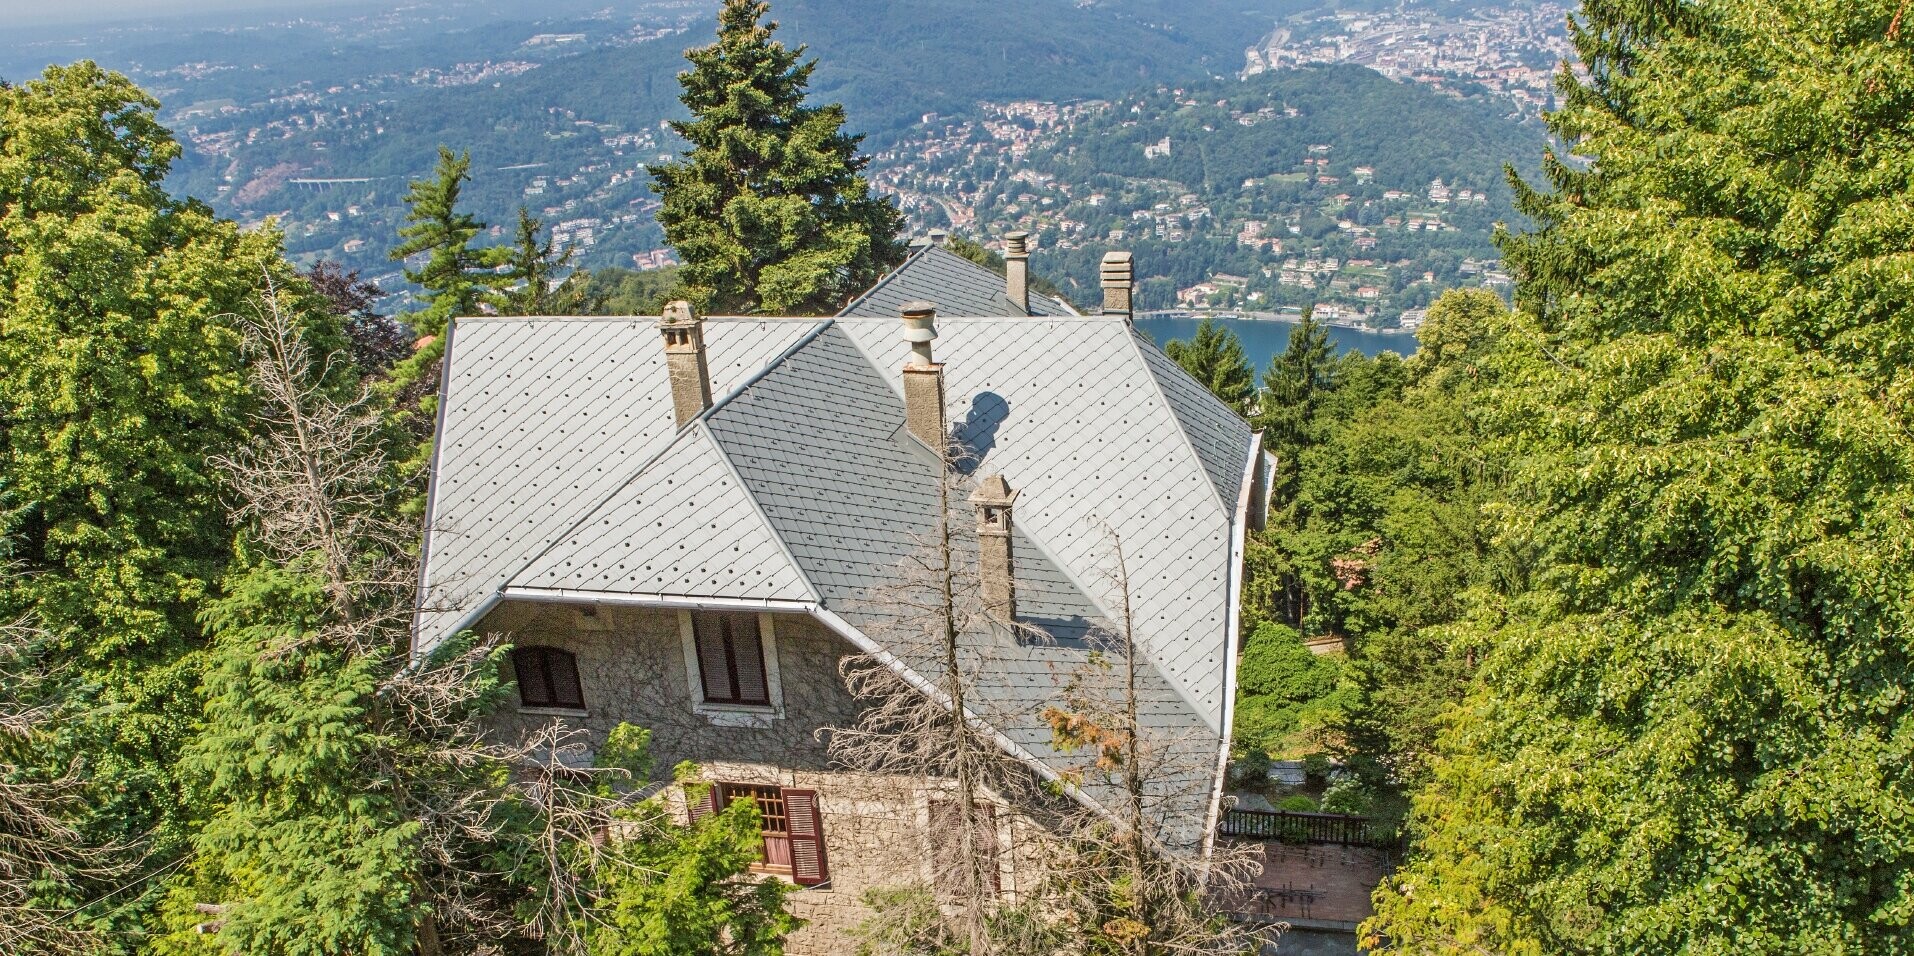 Vogelperspektive der Villa Brunate mit einem robusten Dach, das mit der Dachraute 29 × 29 in P.10 Hellgrau eingedecktist